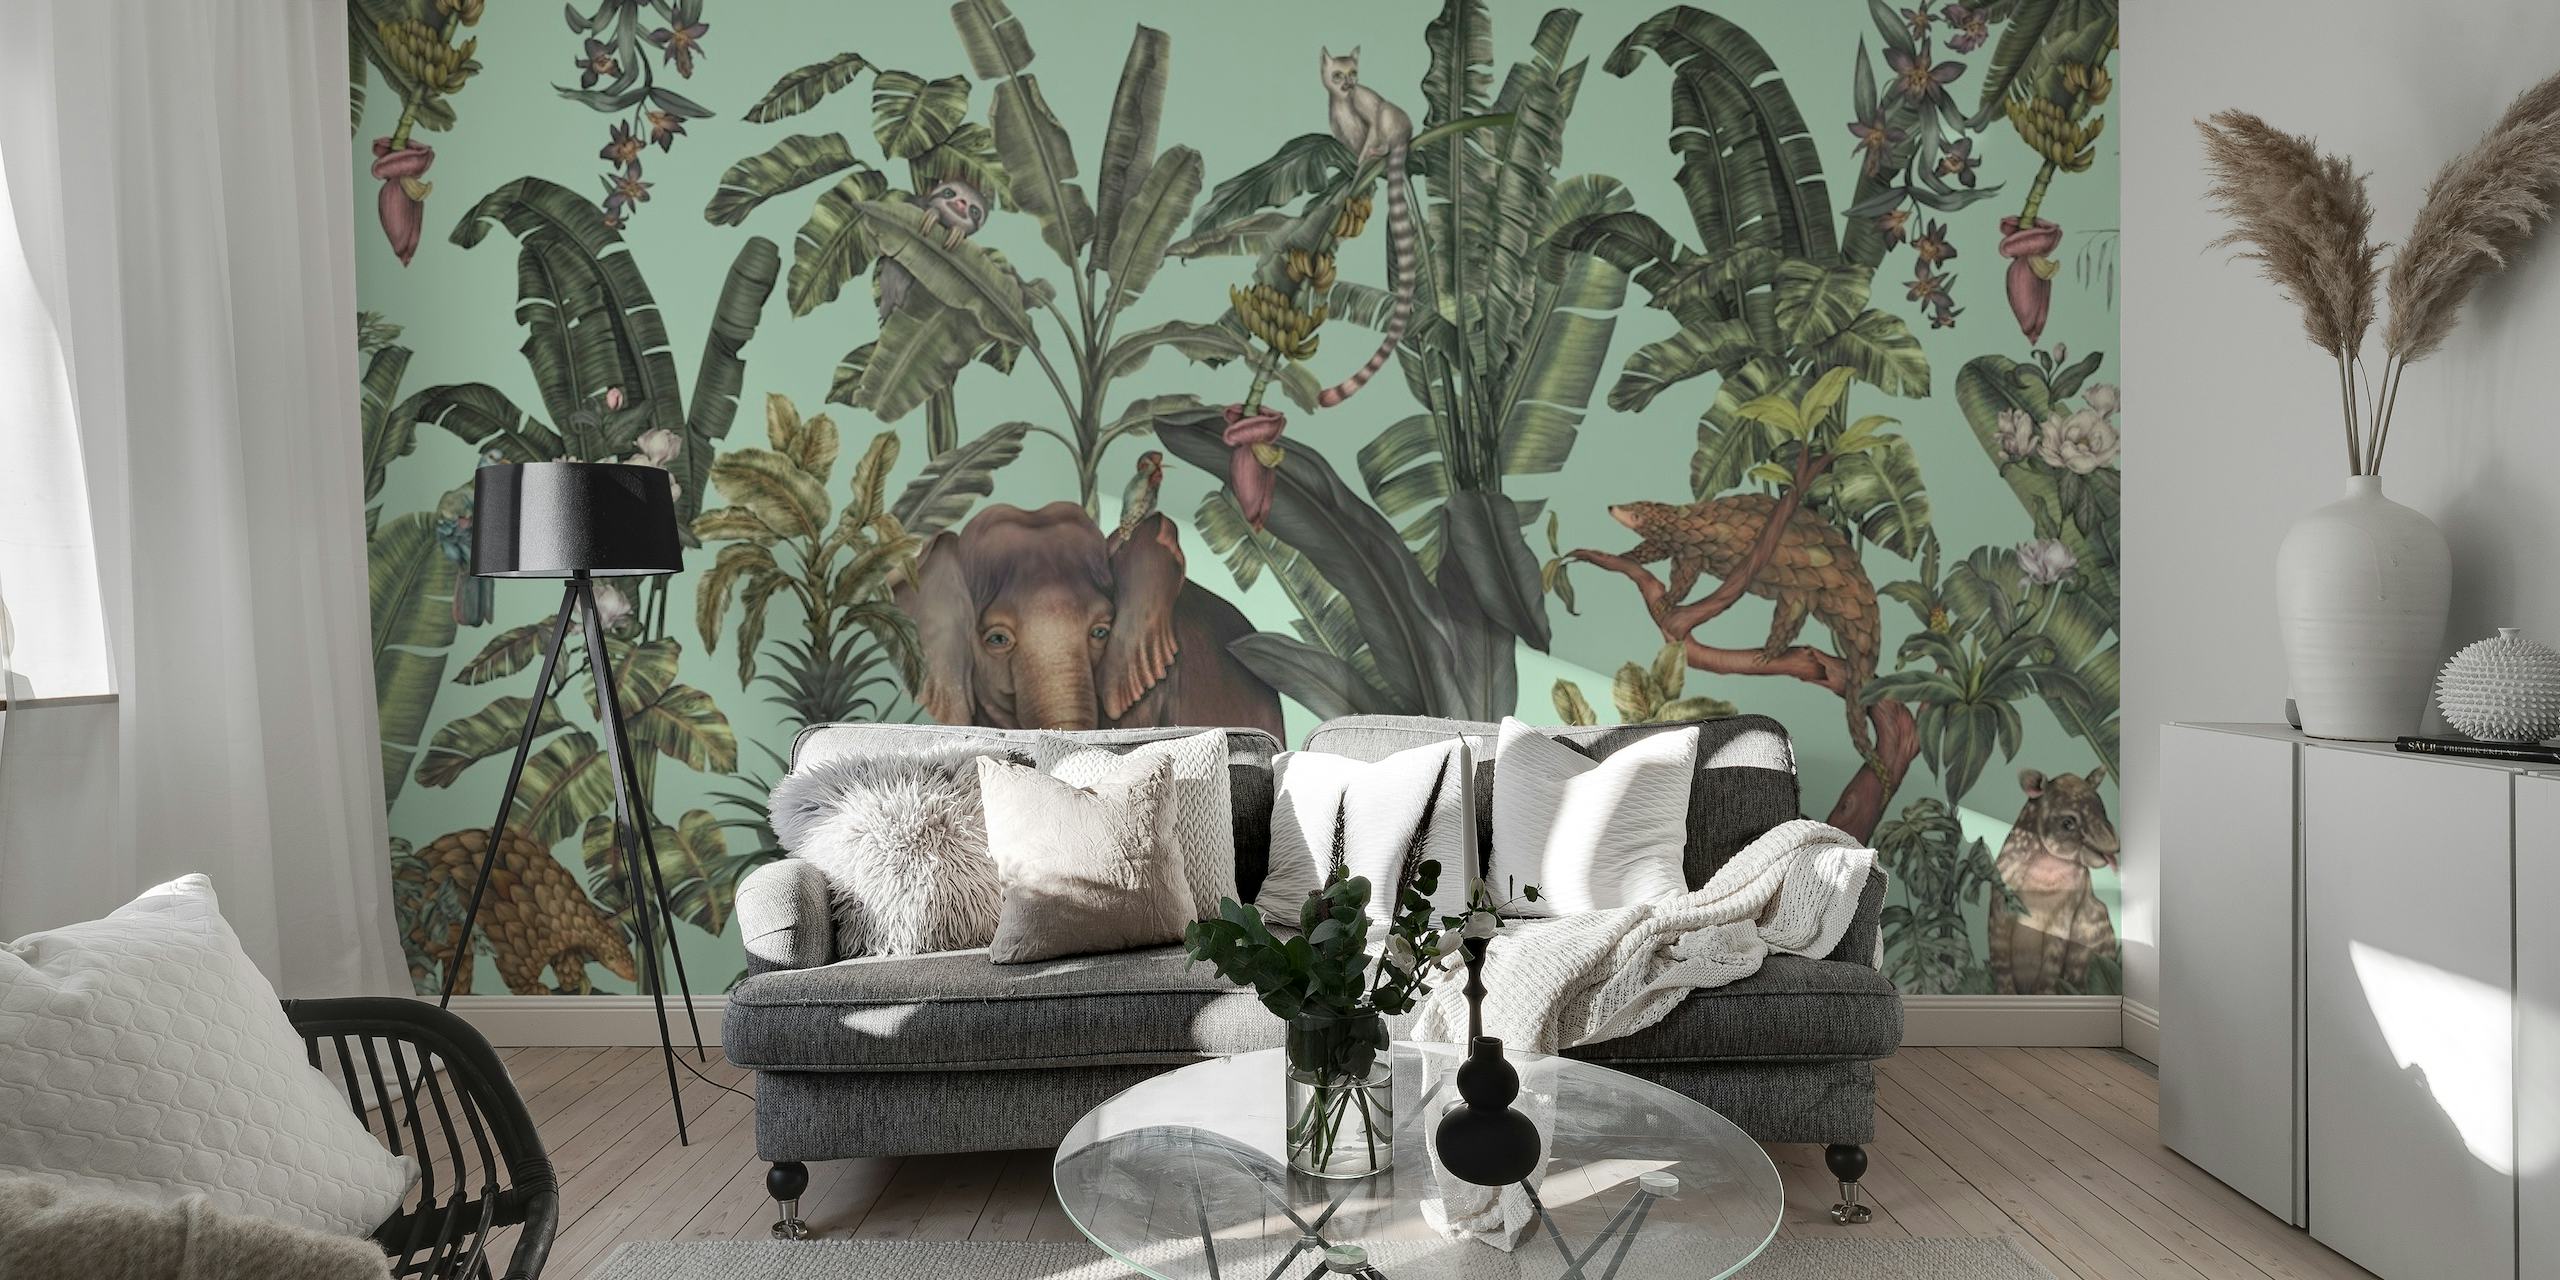 Lichtgroene muurschildering met jungle-thema met tropische flora en verborgen dieren in het wild